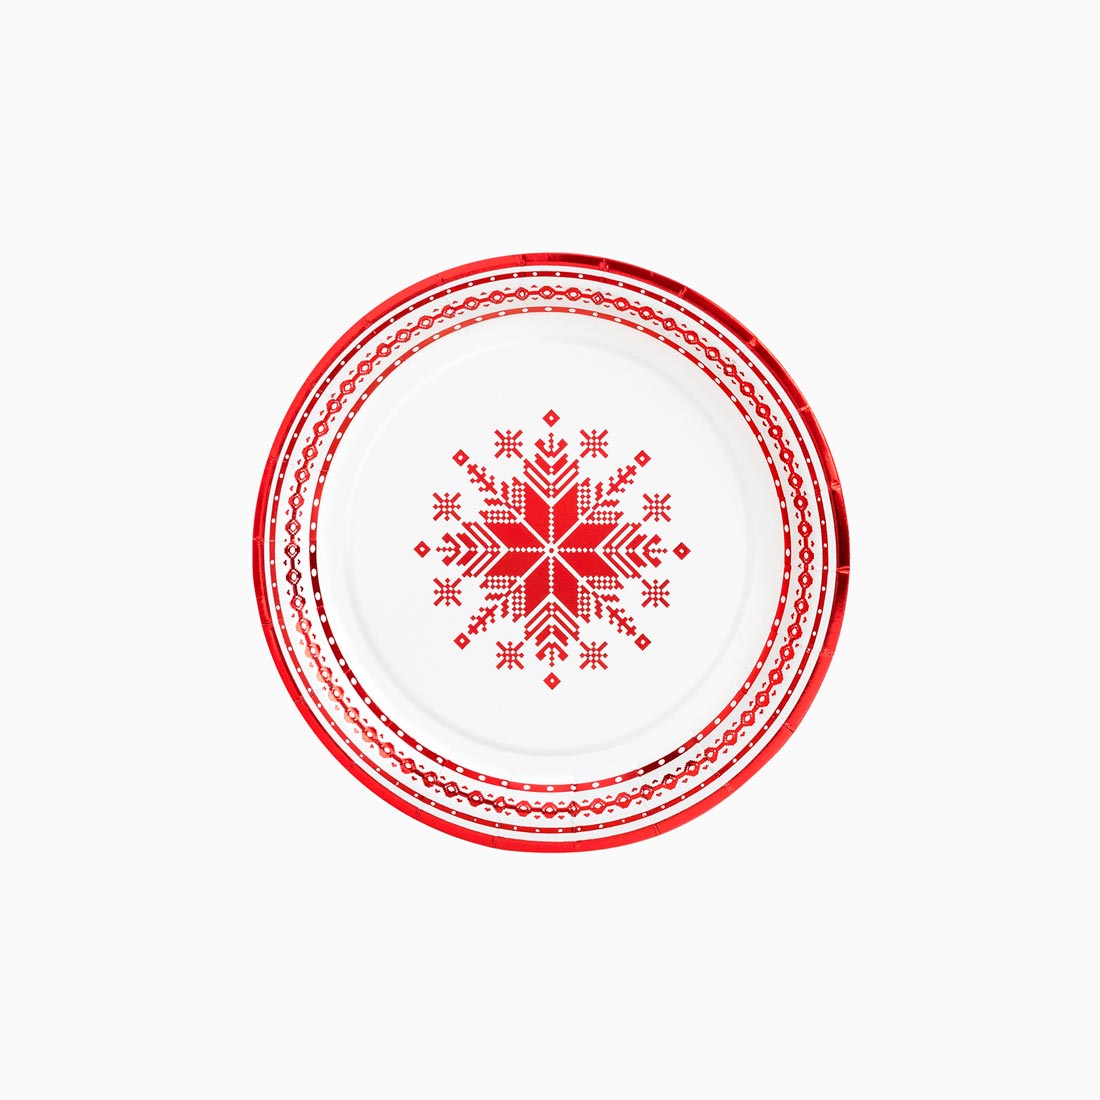 Cartone llano per il dessert natalizio Ø 18 cm ricami rossi